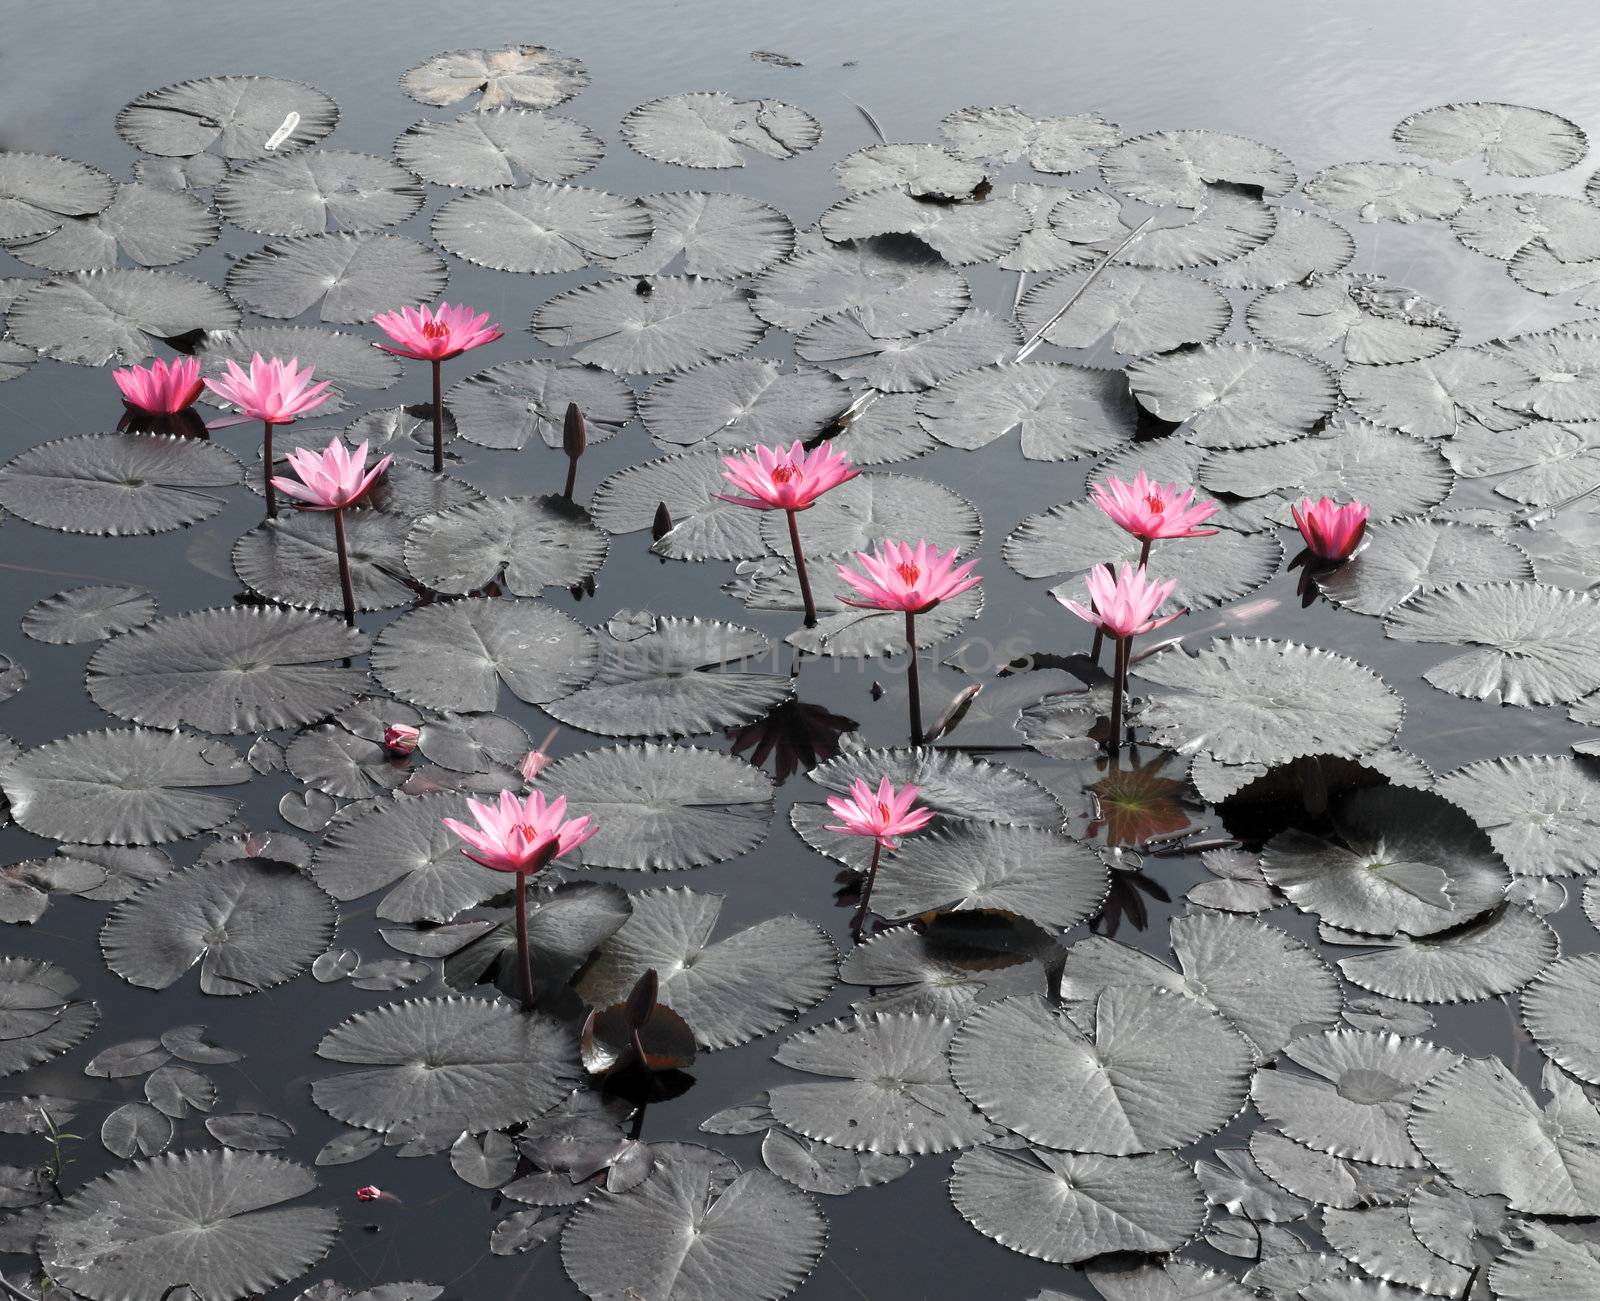 Lotus pond scenery by geargodz